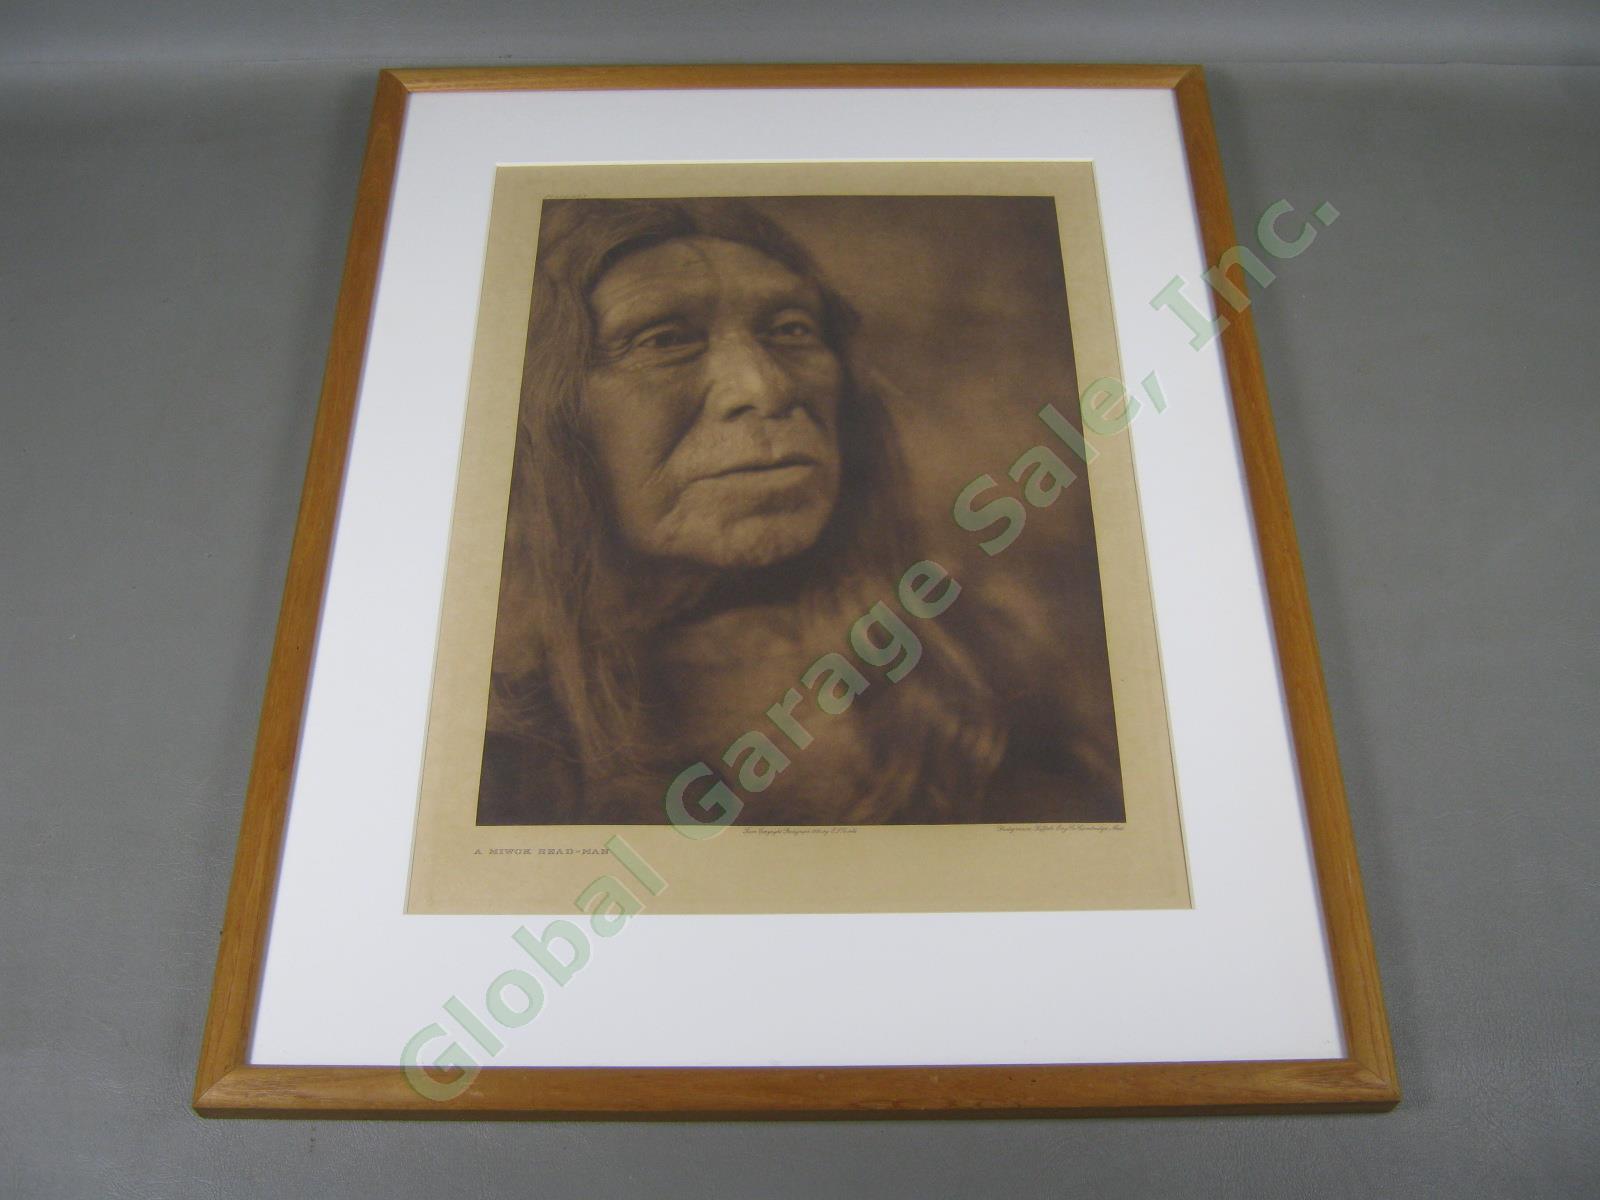 Edward Curtis Photogravure Photo 1924 Miwok Head Man Plate 493 11.5x15.5 Gelder